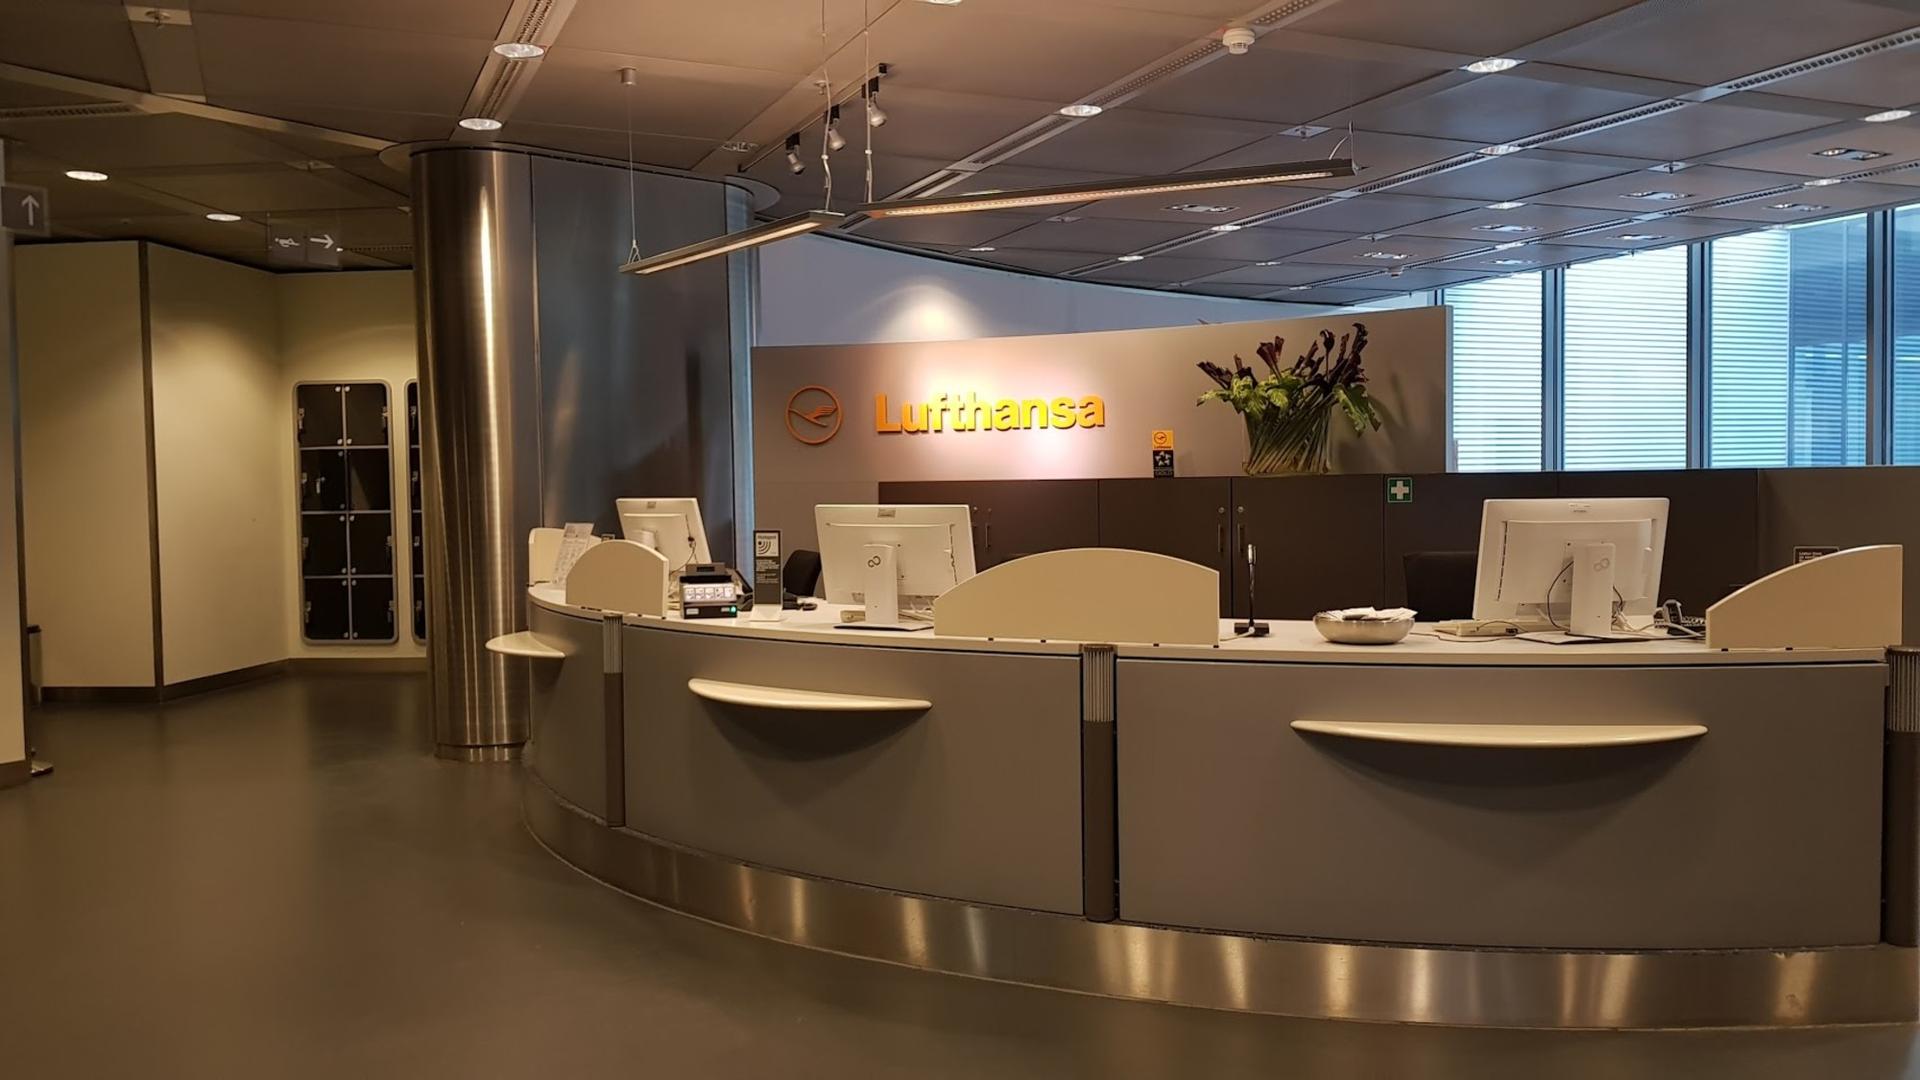 Lufthansa Business Lounge (Non-Schengen, Gates B44-B48) image 45 of 46